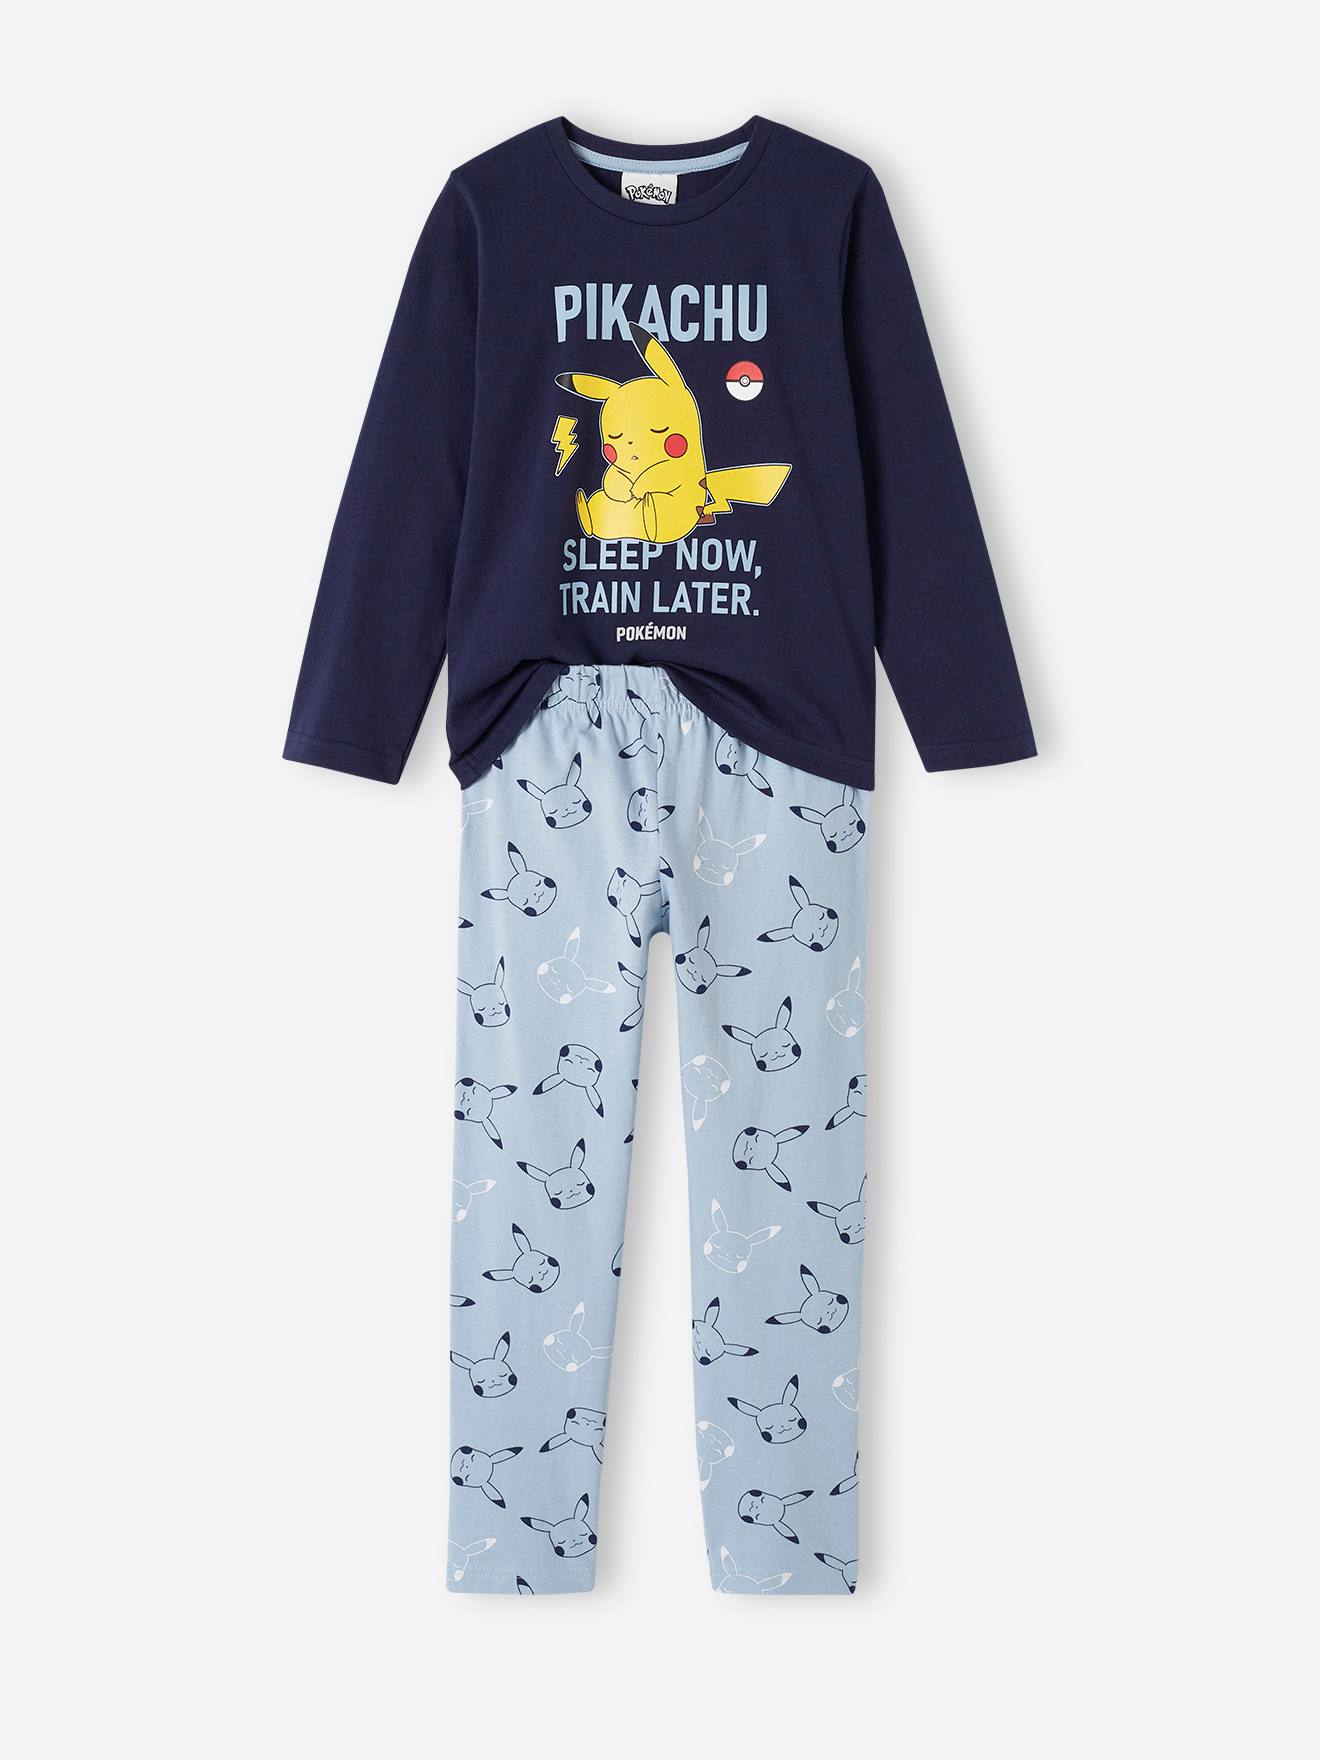 Pyjama garçon Sonic® the Hedgehog - marine, Garçon